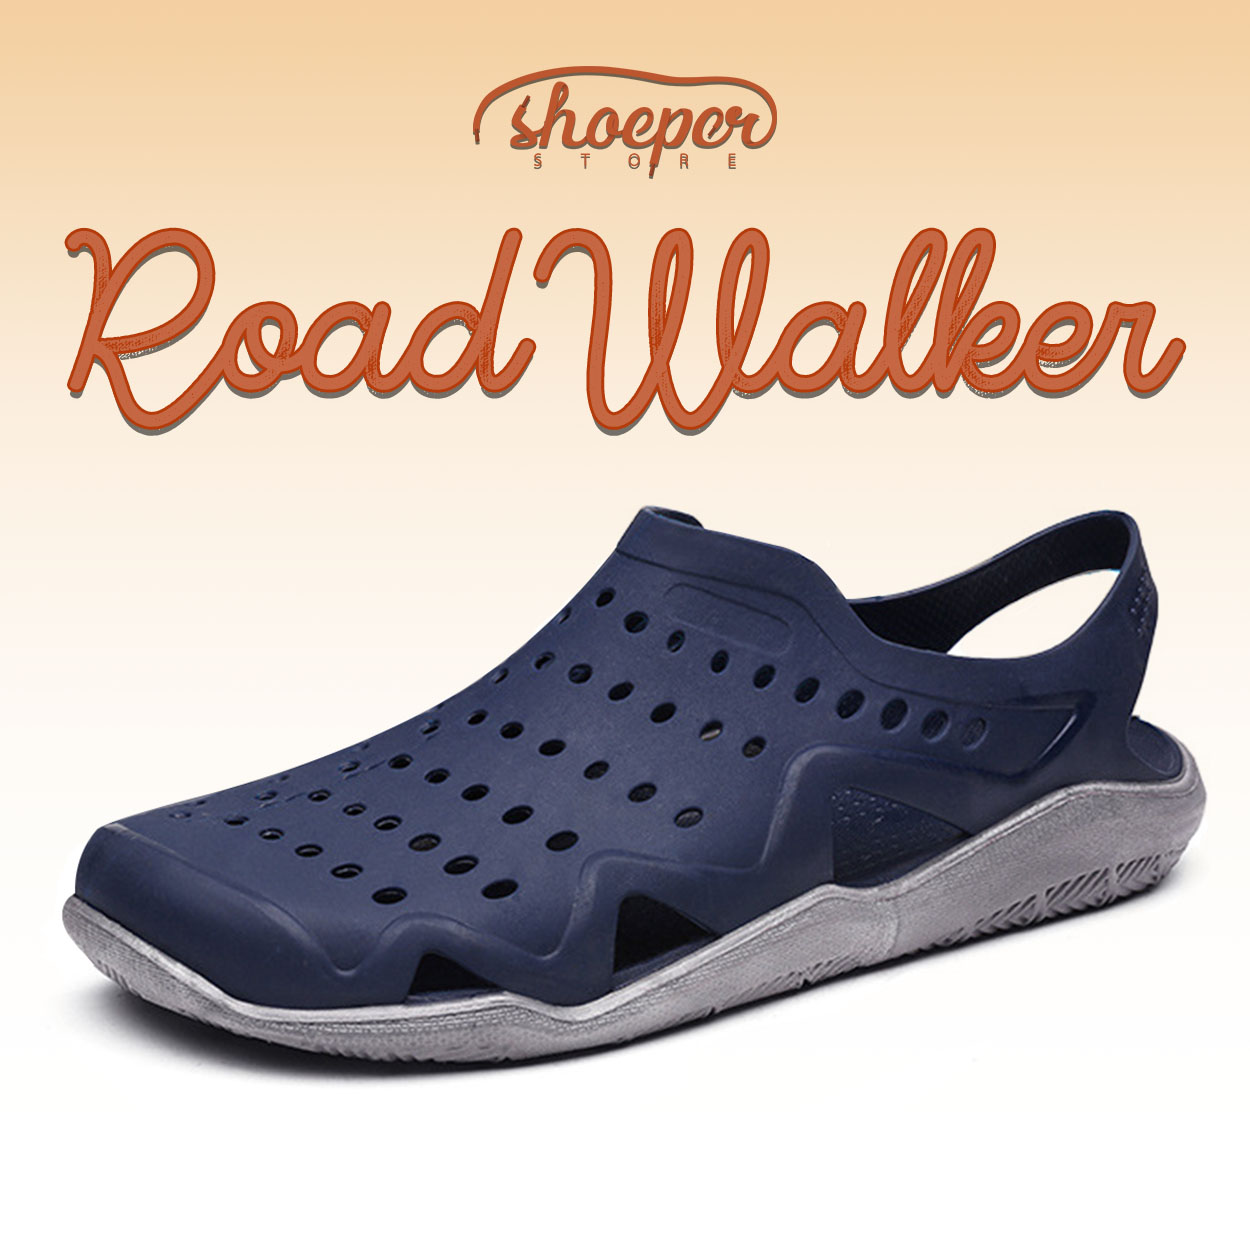 ShoePer Roadwalker (Rain and Summer 